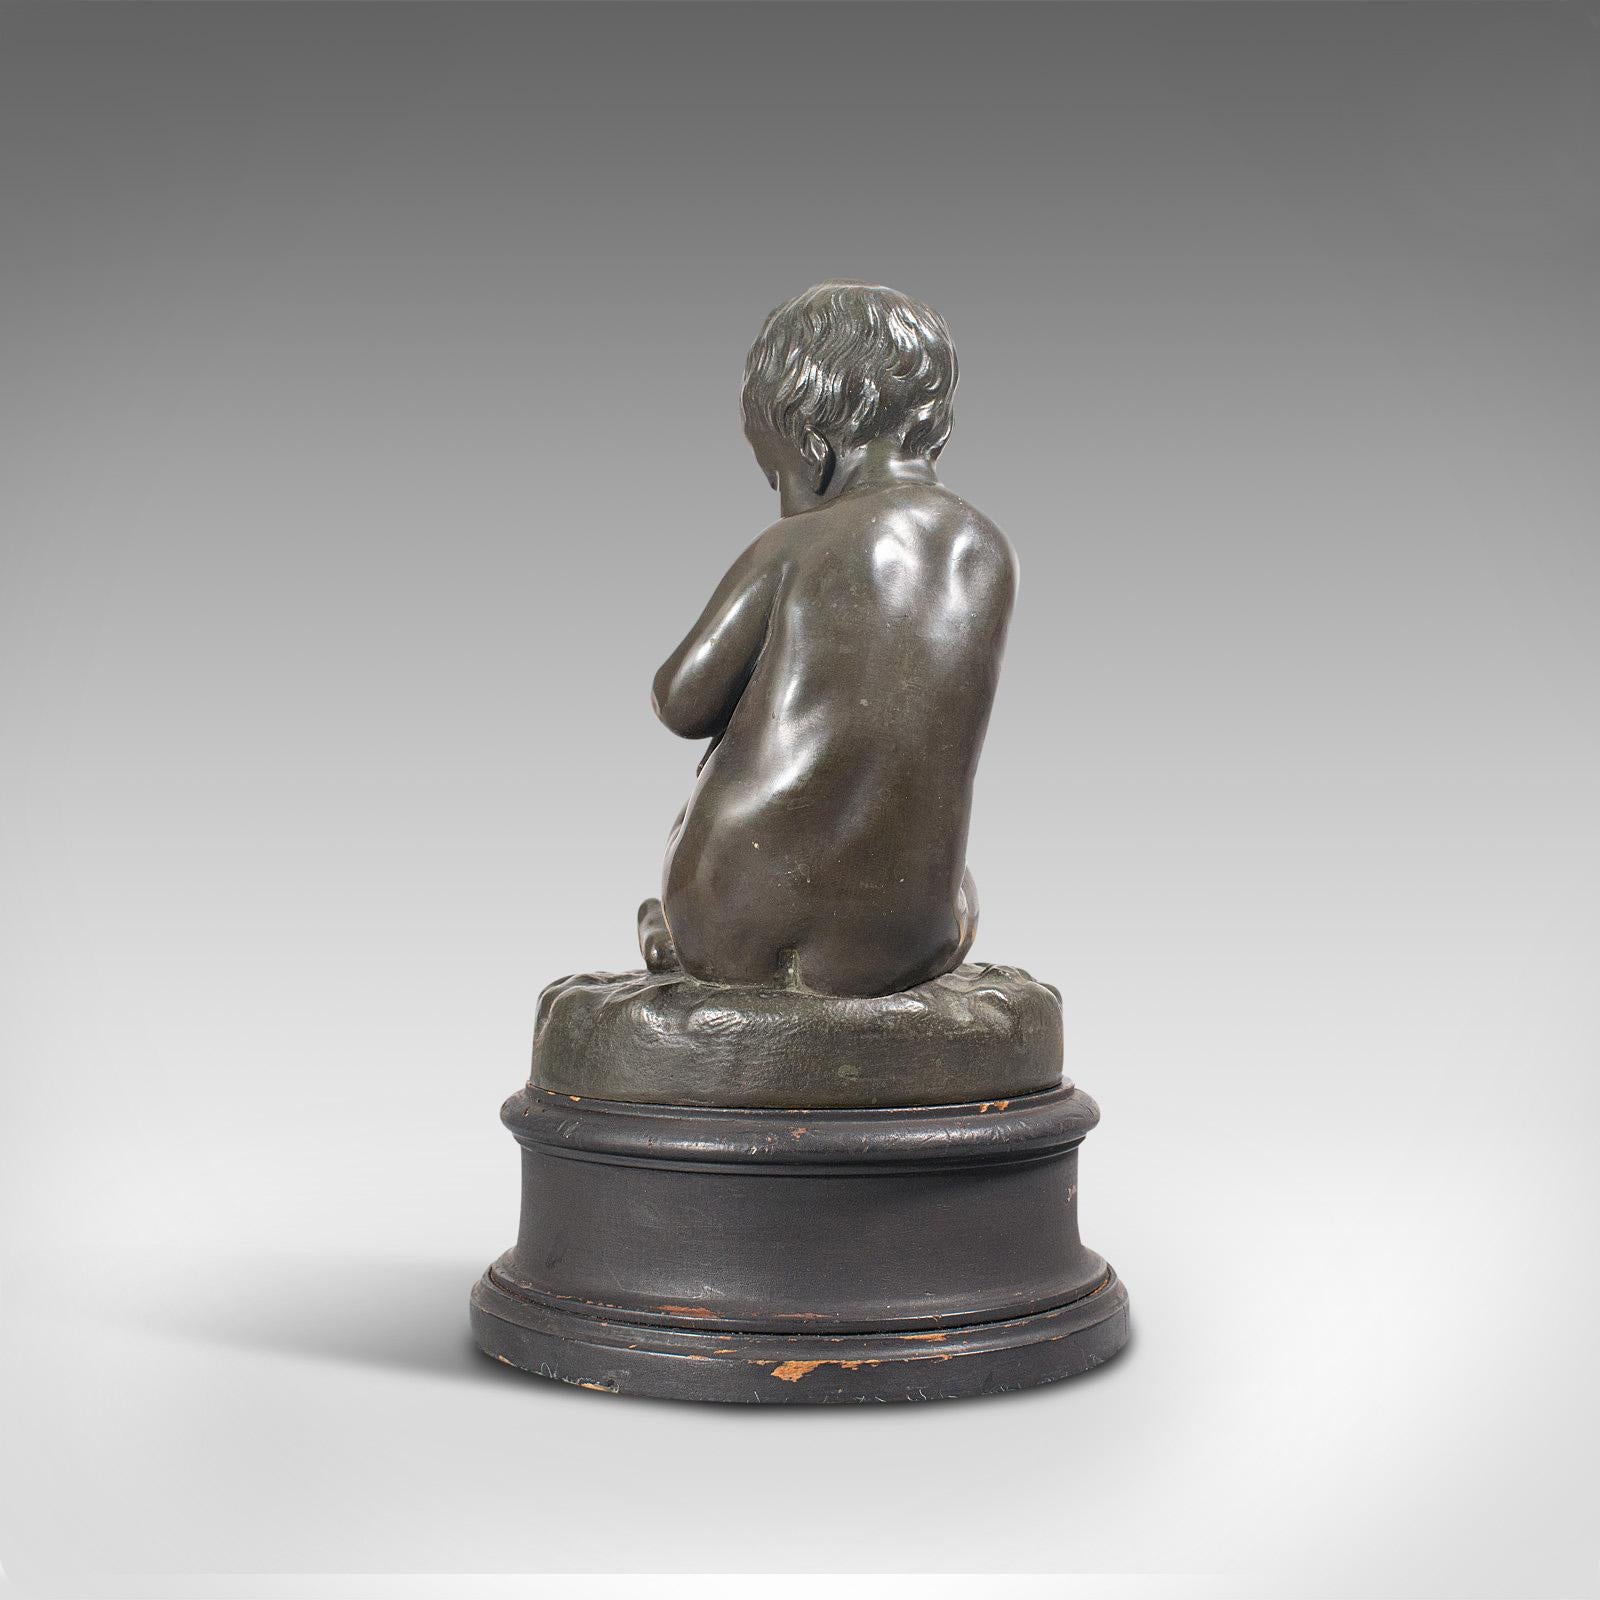 Antique Putto Statue, French, Bronze, Cherub Figure, Late 19th Century For Sale 2